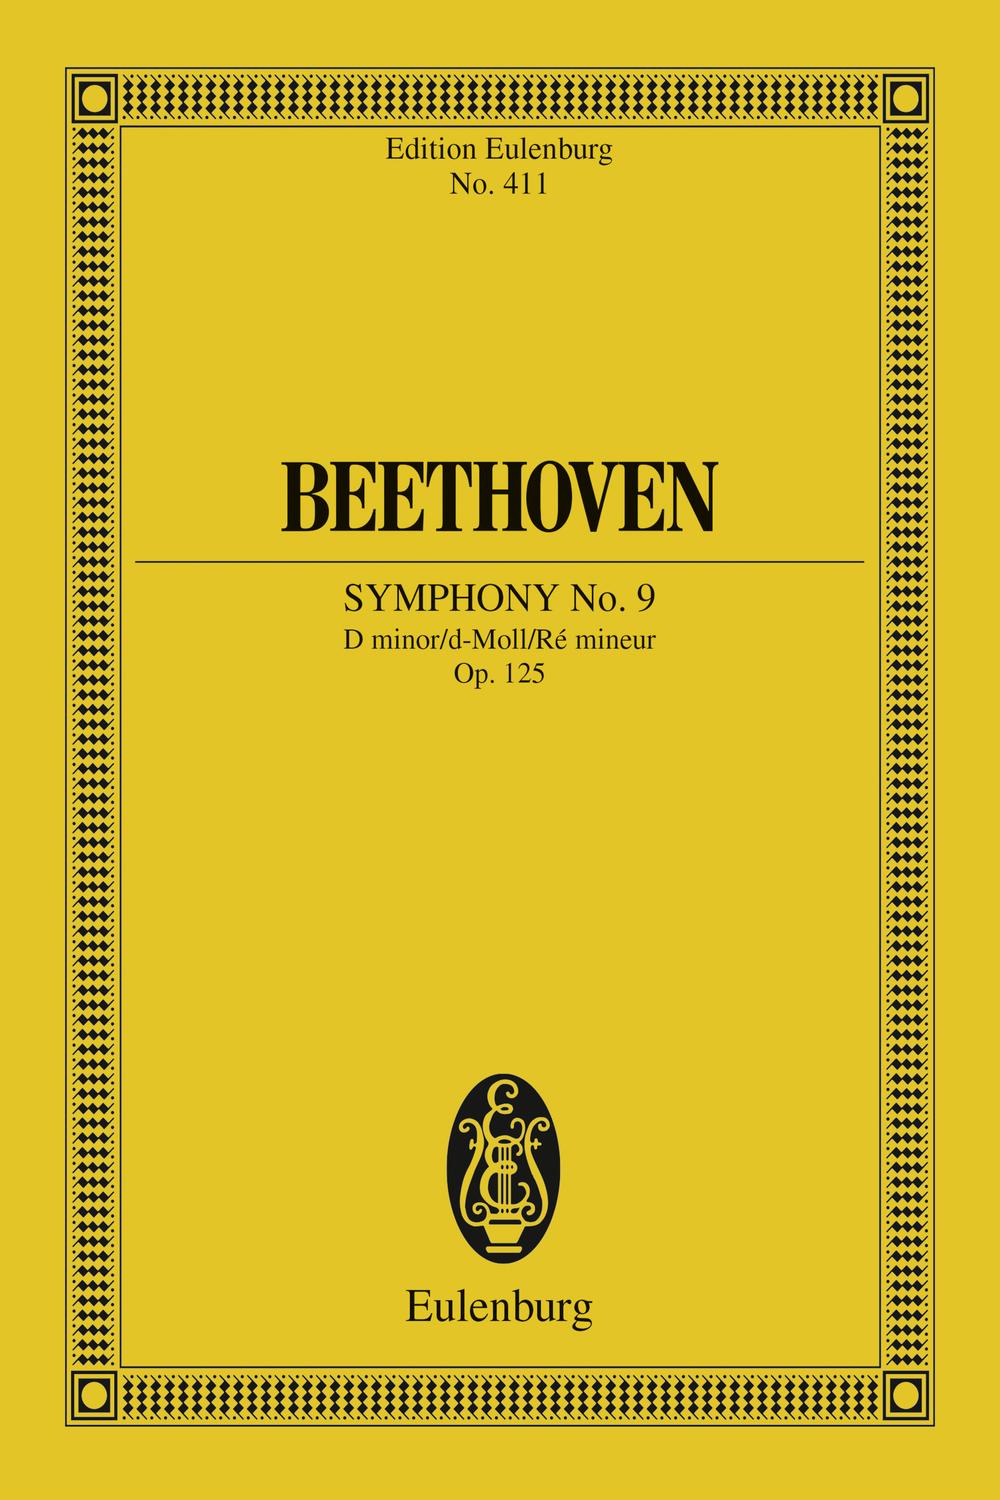 Symphony No. 9 D minor - Ludwig van Beethoven,Richard Clarke,Norbert Henning